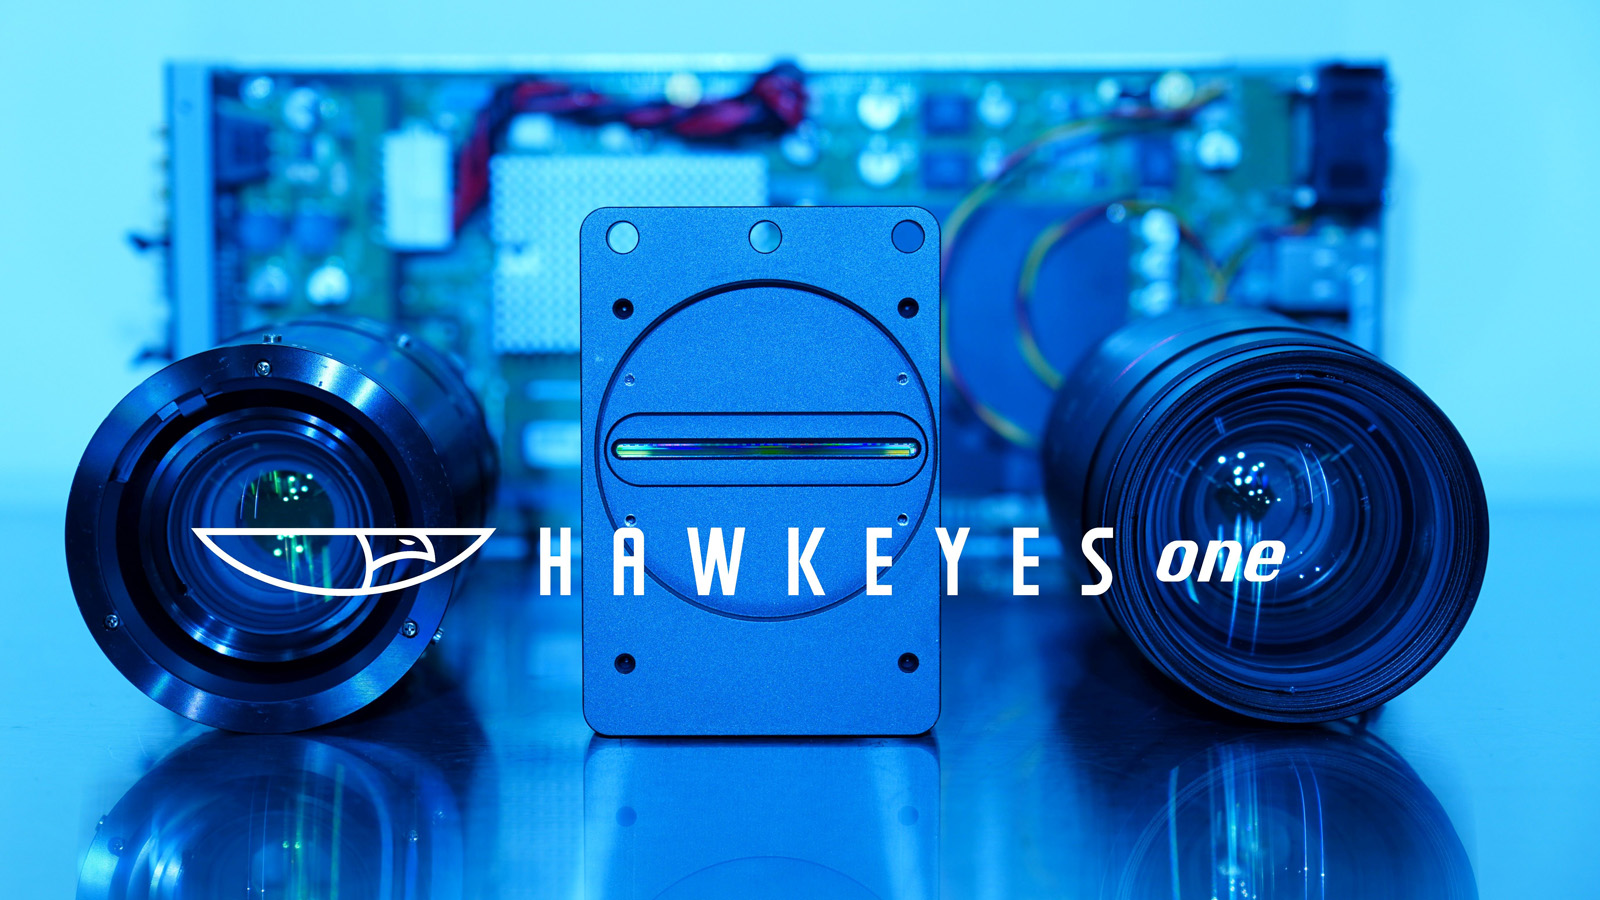 フィルム検査システム「Hawkeyes one」